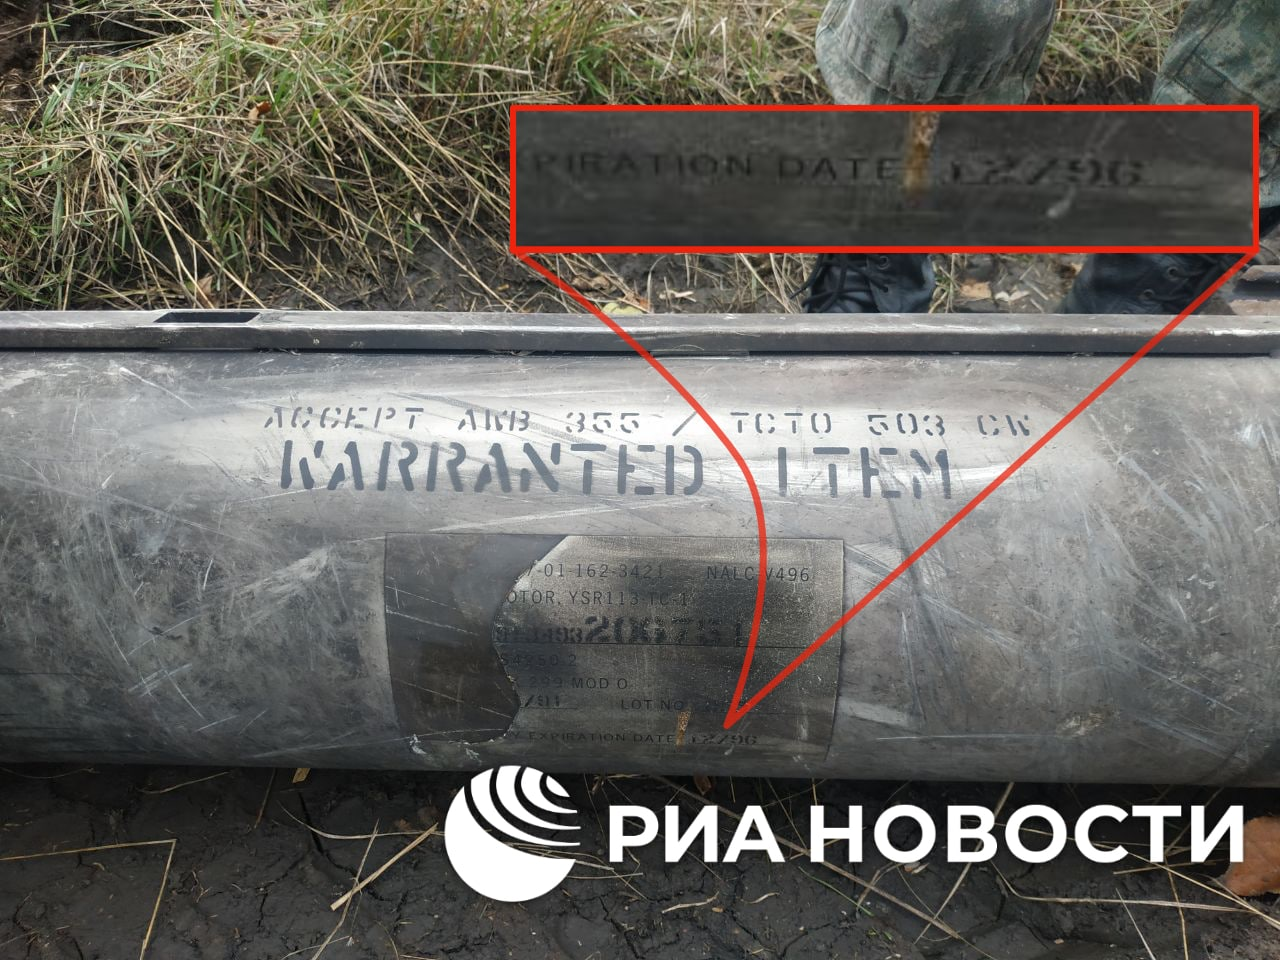 Двигатель американской ракеты, найденный у Донецка. Фото © Telegram-канал РИА "Новости"